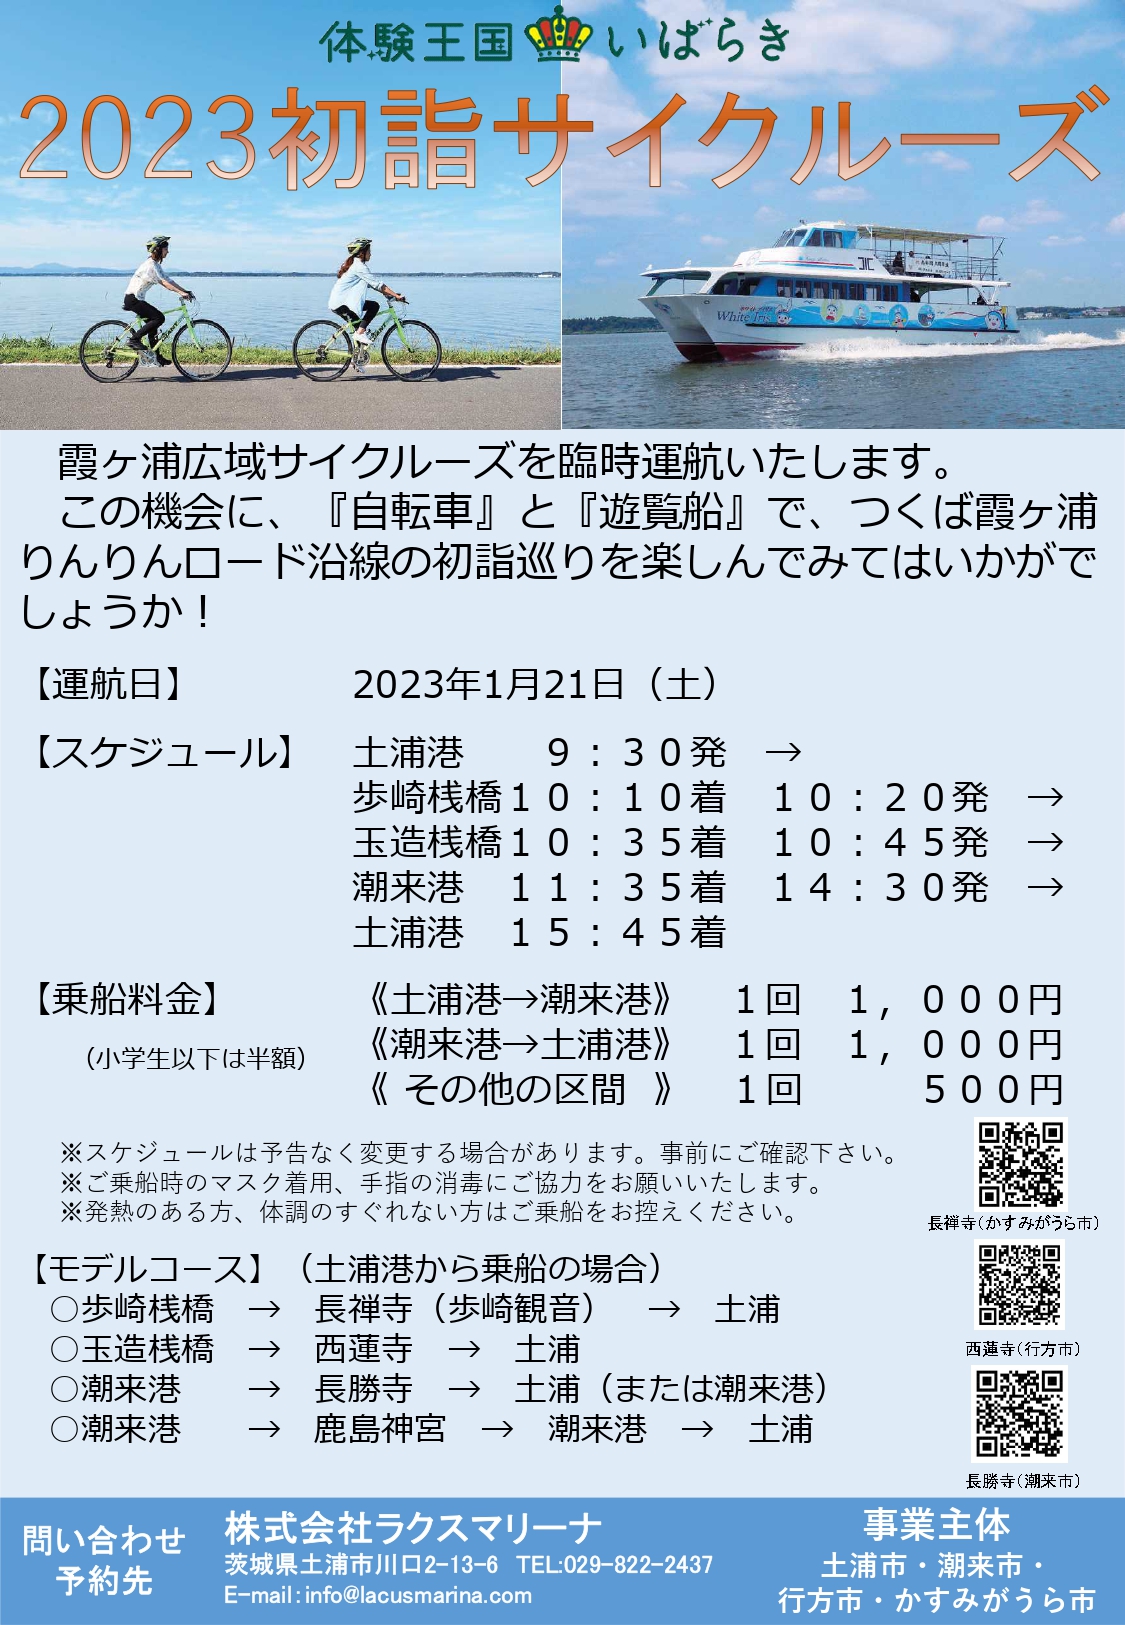 2023初詣サイクルーズ運航決定!!page-visual 2023初詣サイクルーズ運航決定!!ビジュアル